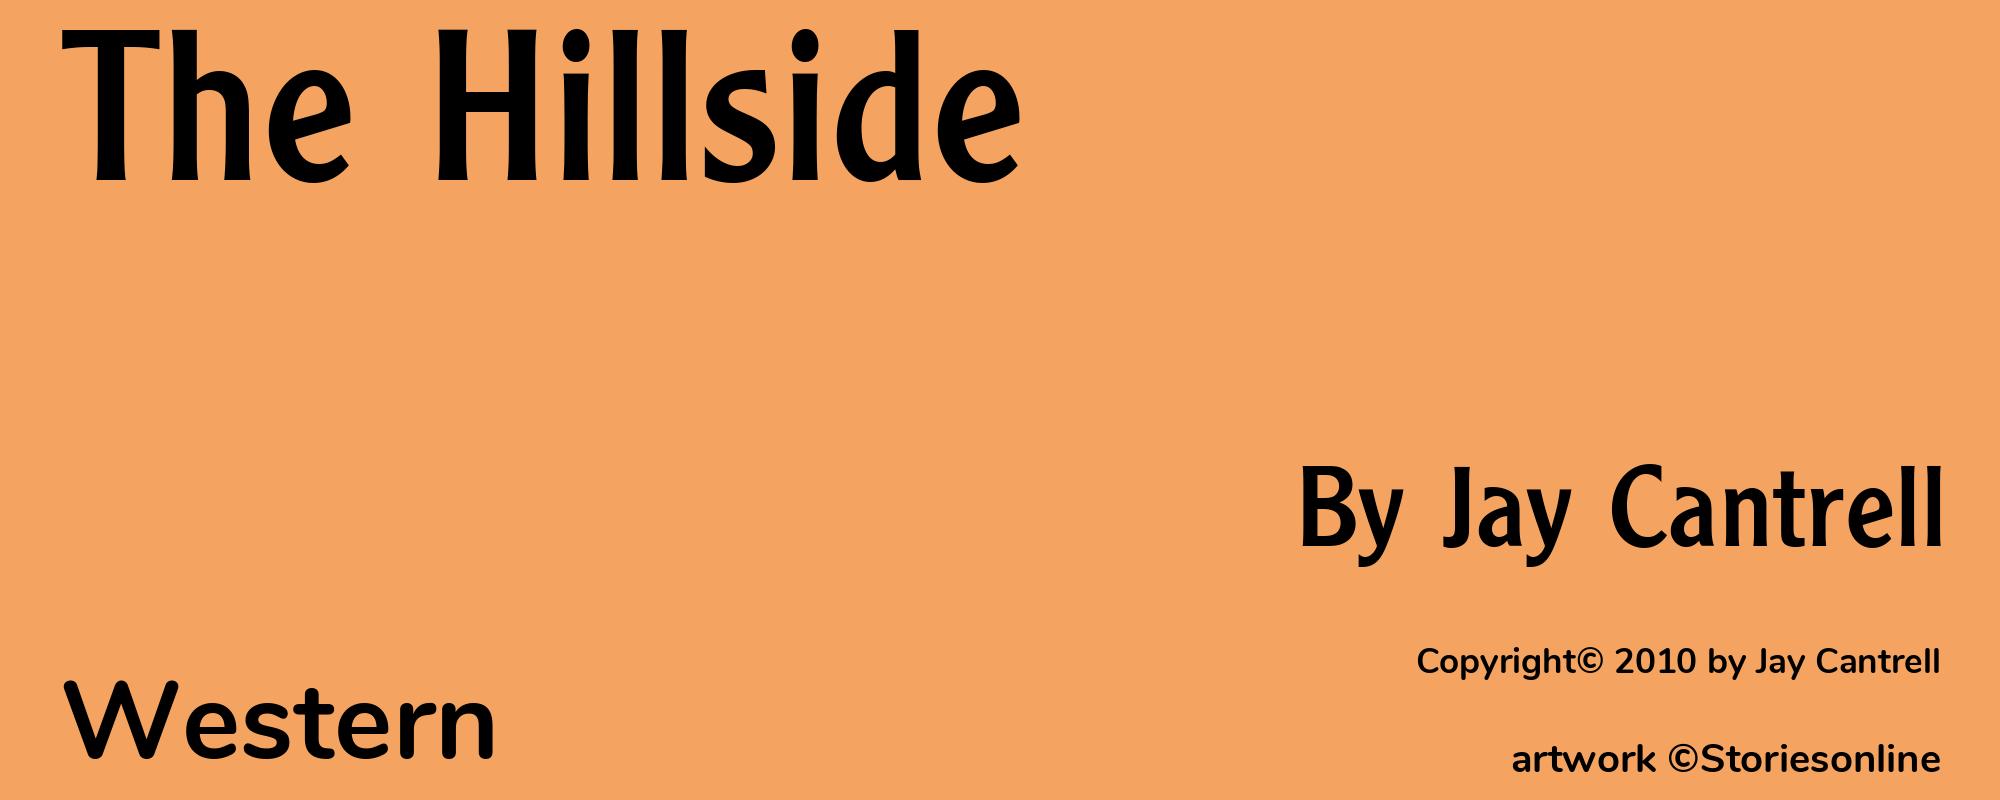 The Hillside - Cover